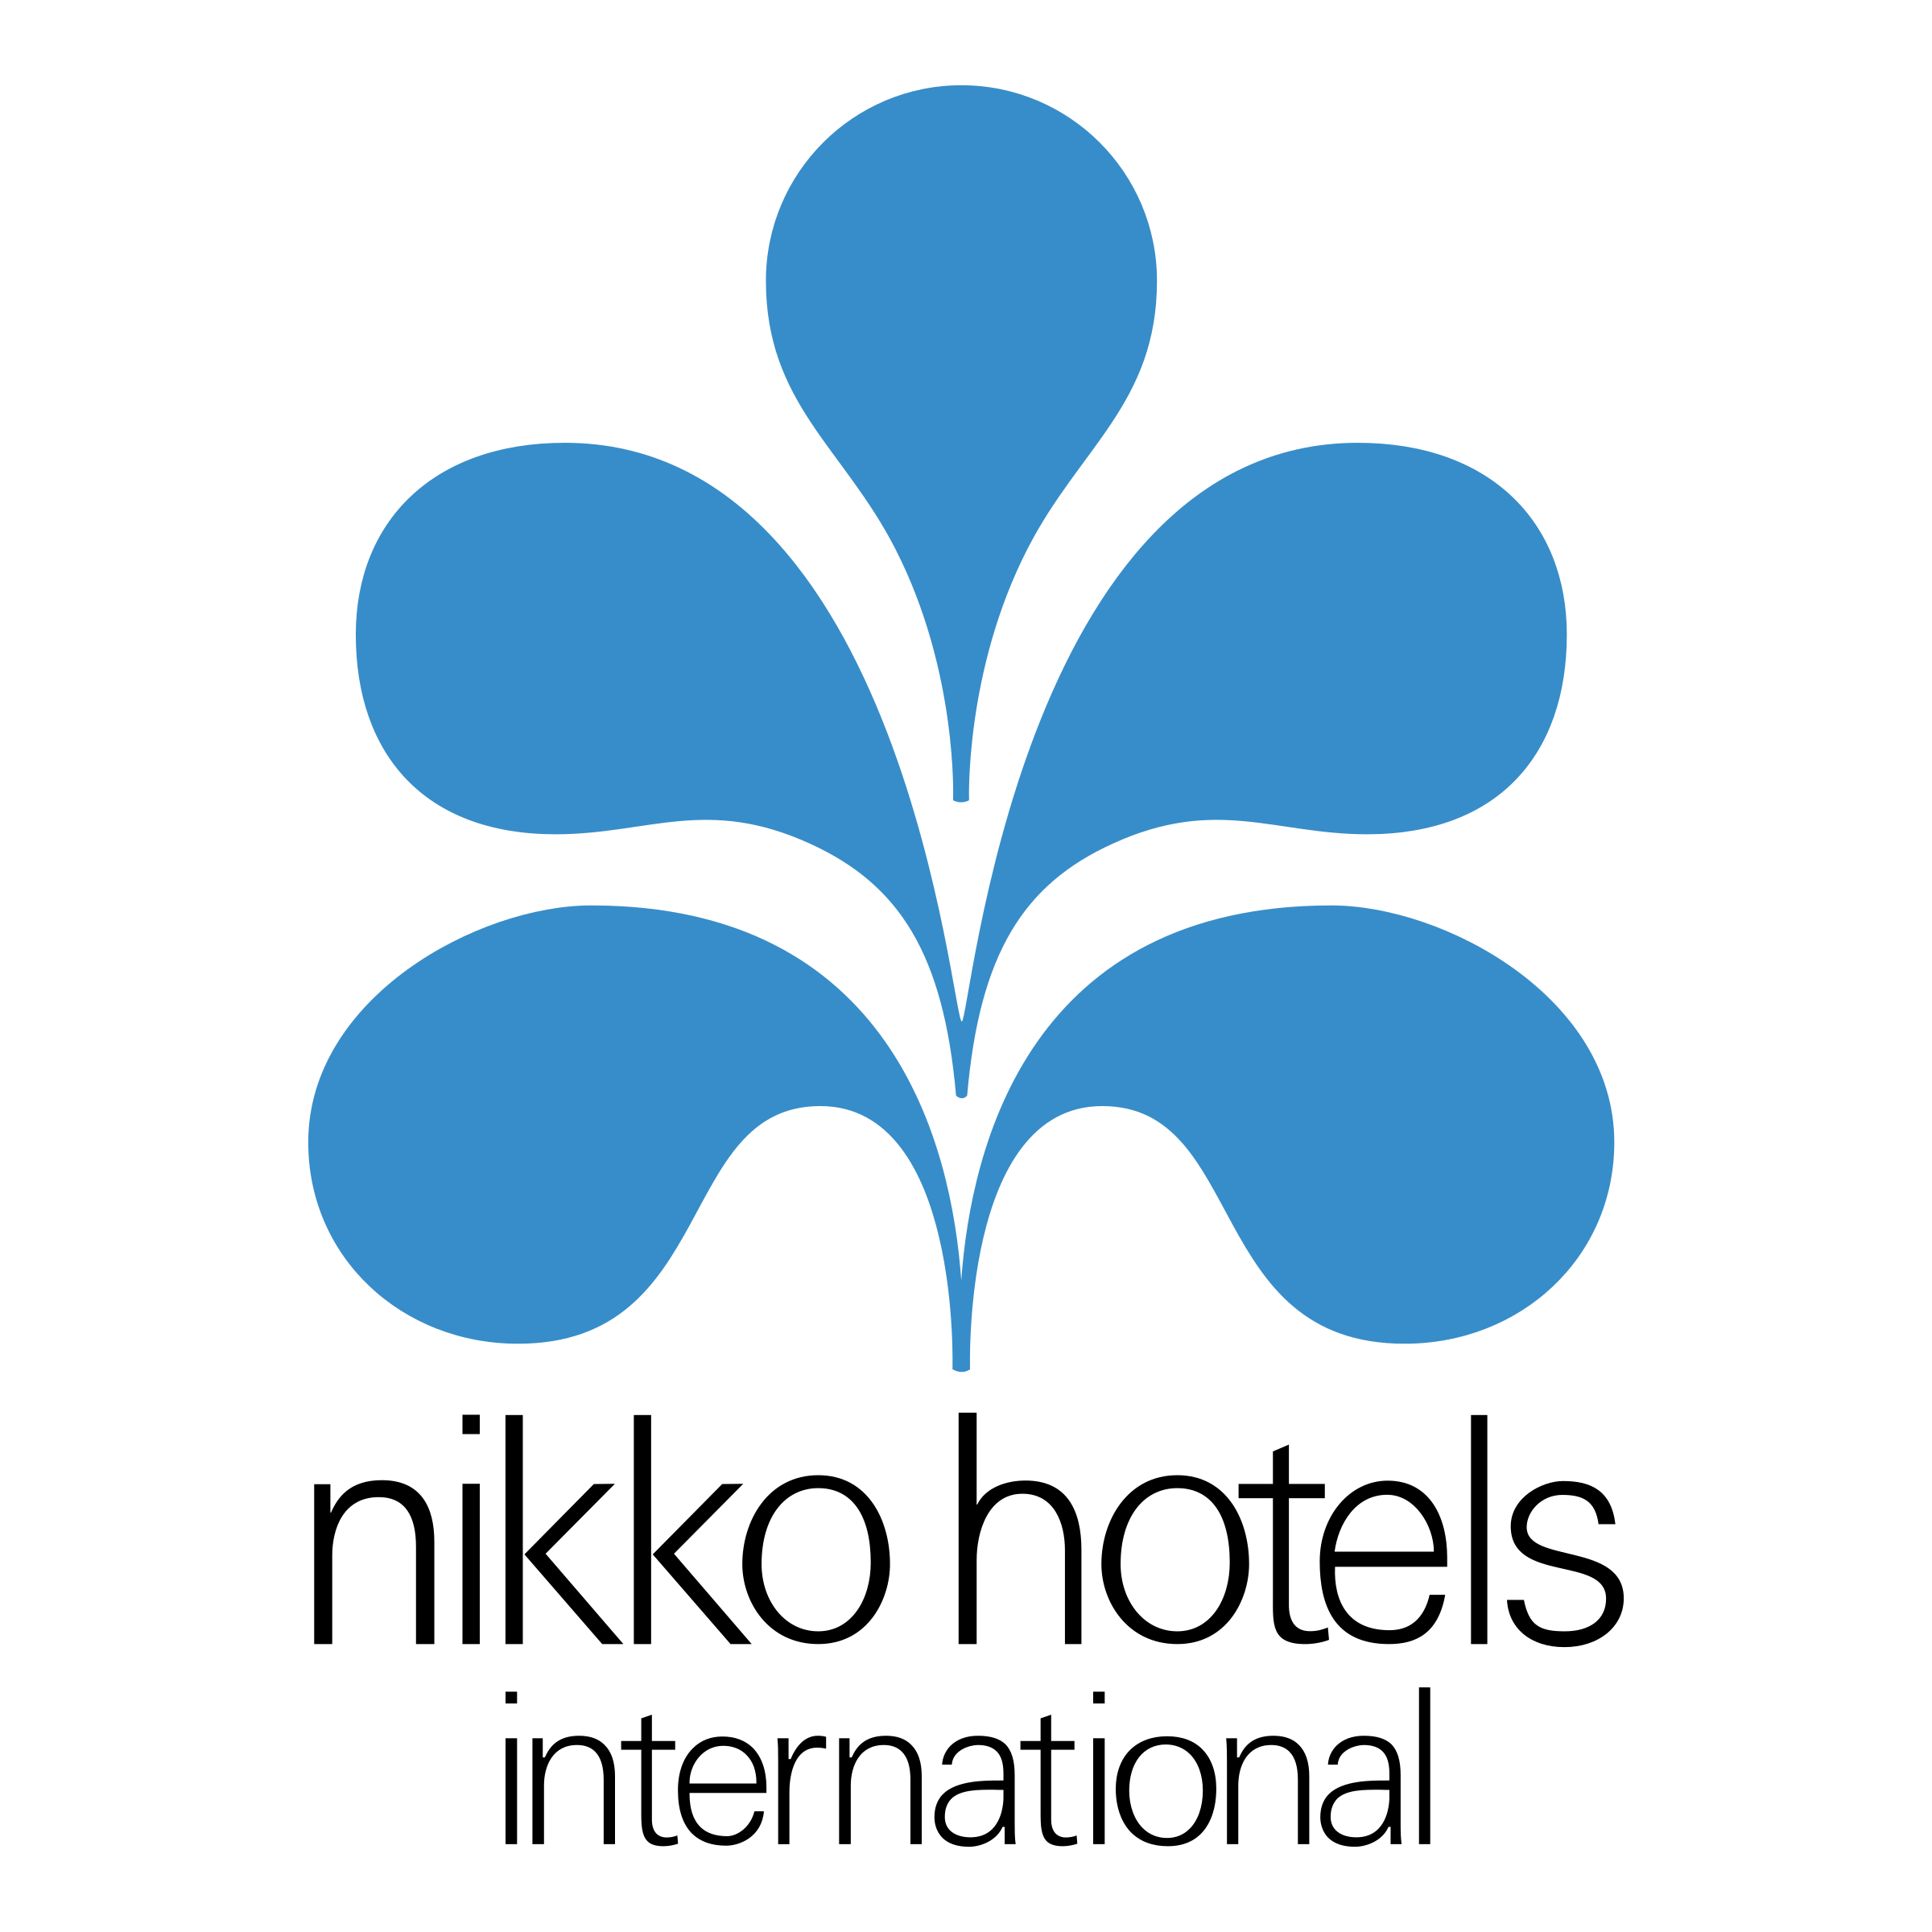 Nikko Logo - Nikko Hotels International Logo PNG Transparent & SVG Vector